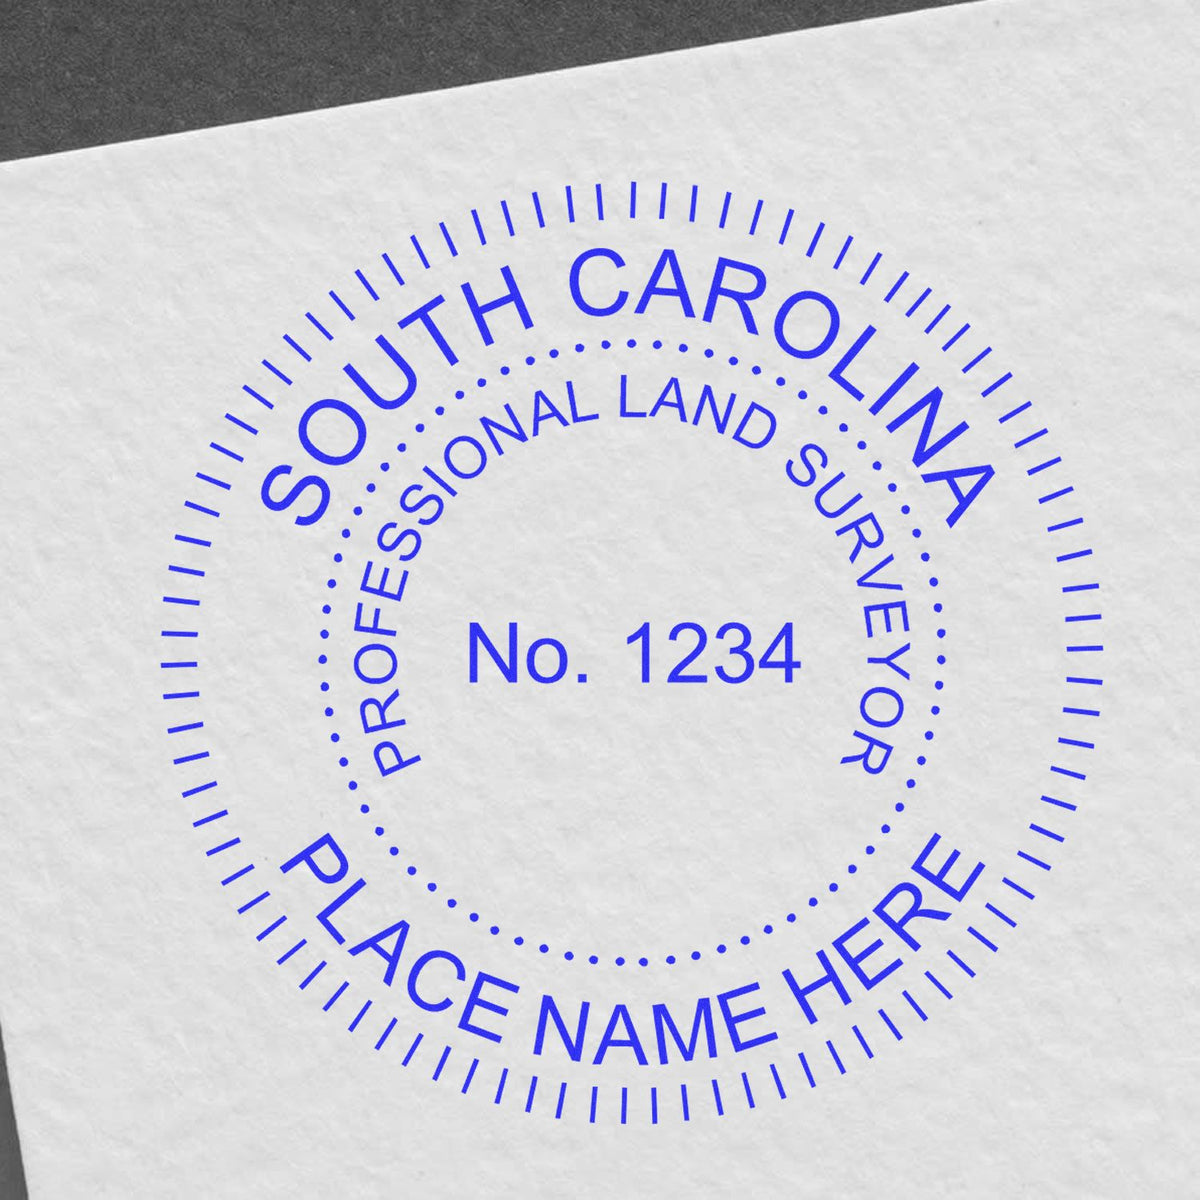 South Carolina Land Surveyor Seal Stamp In Use Photo